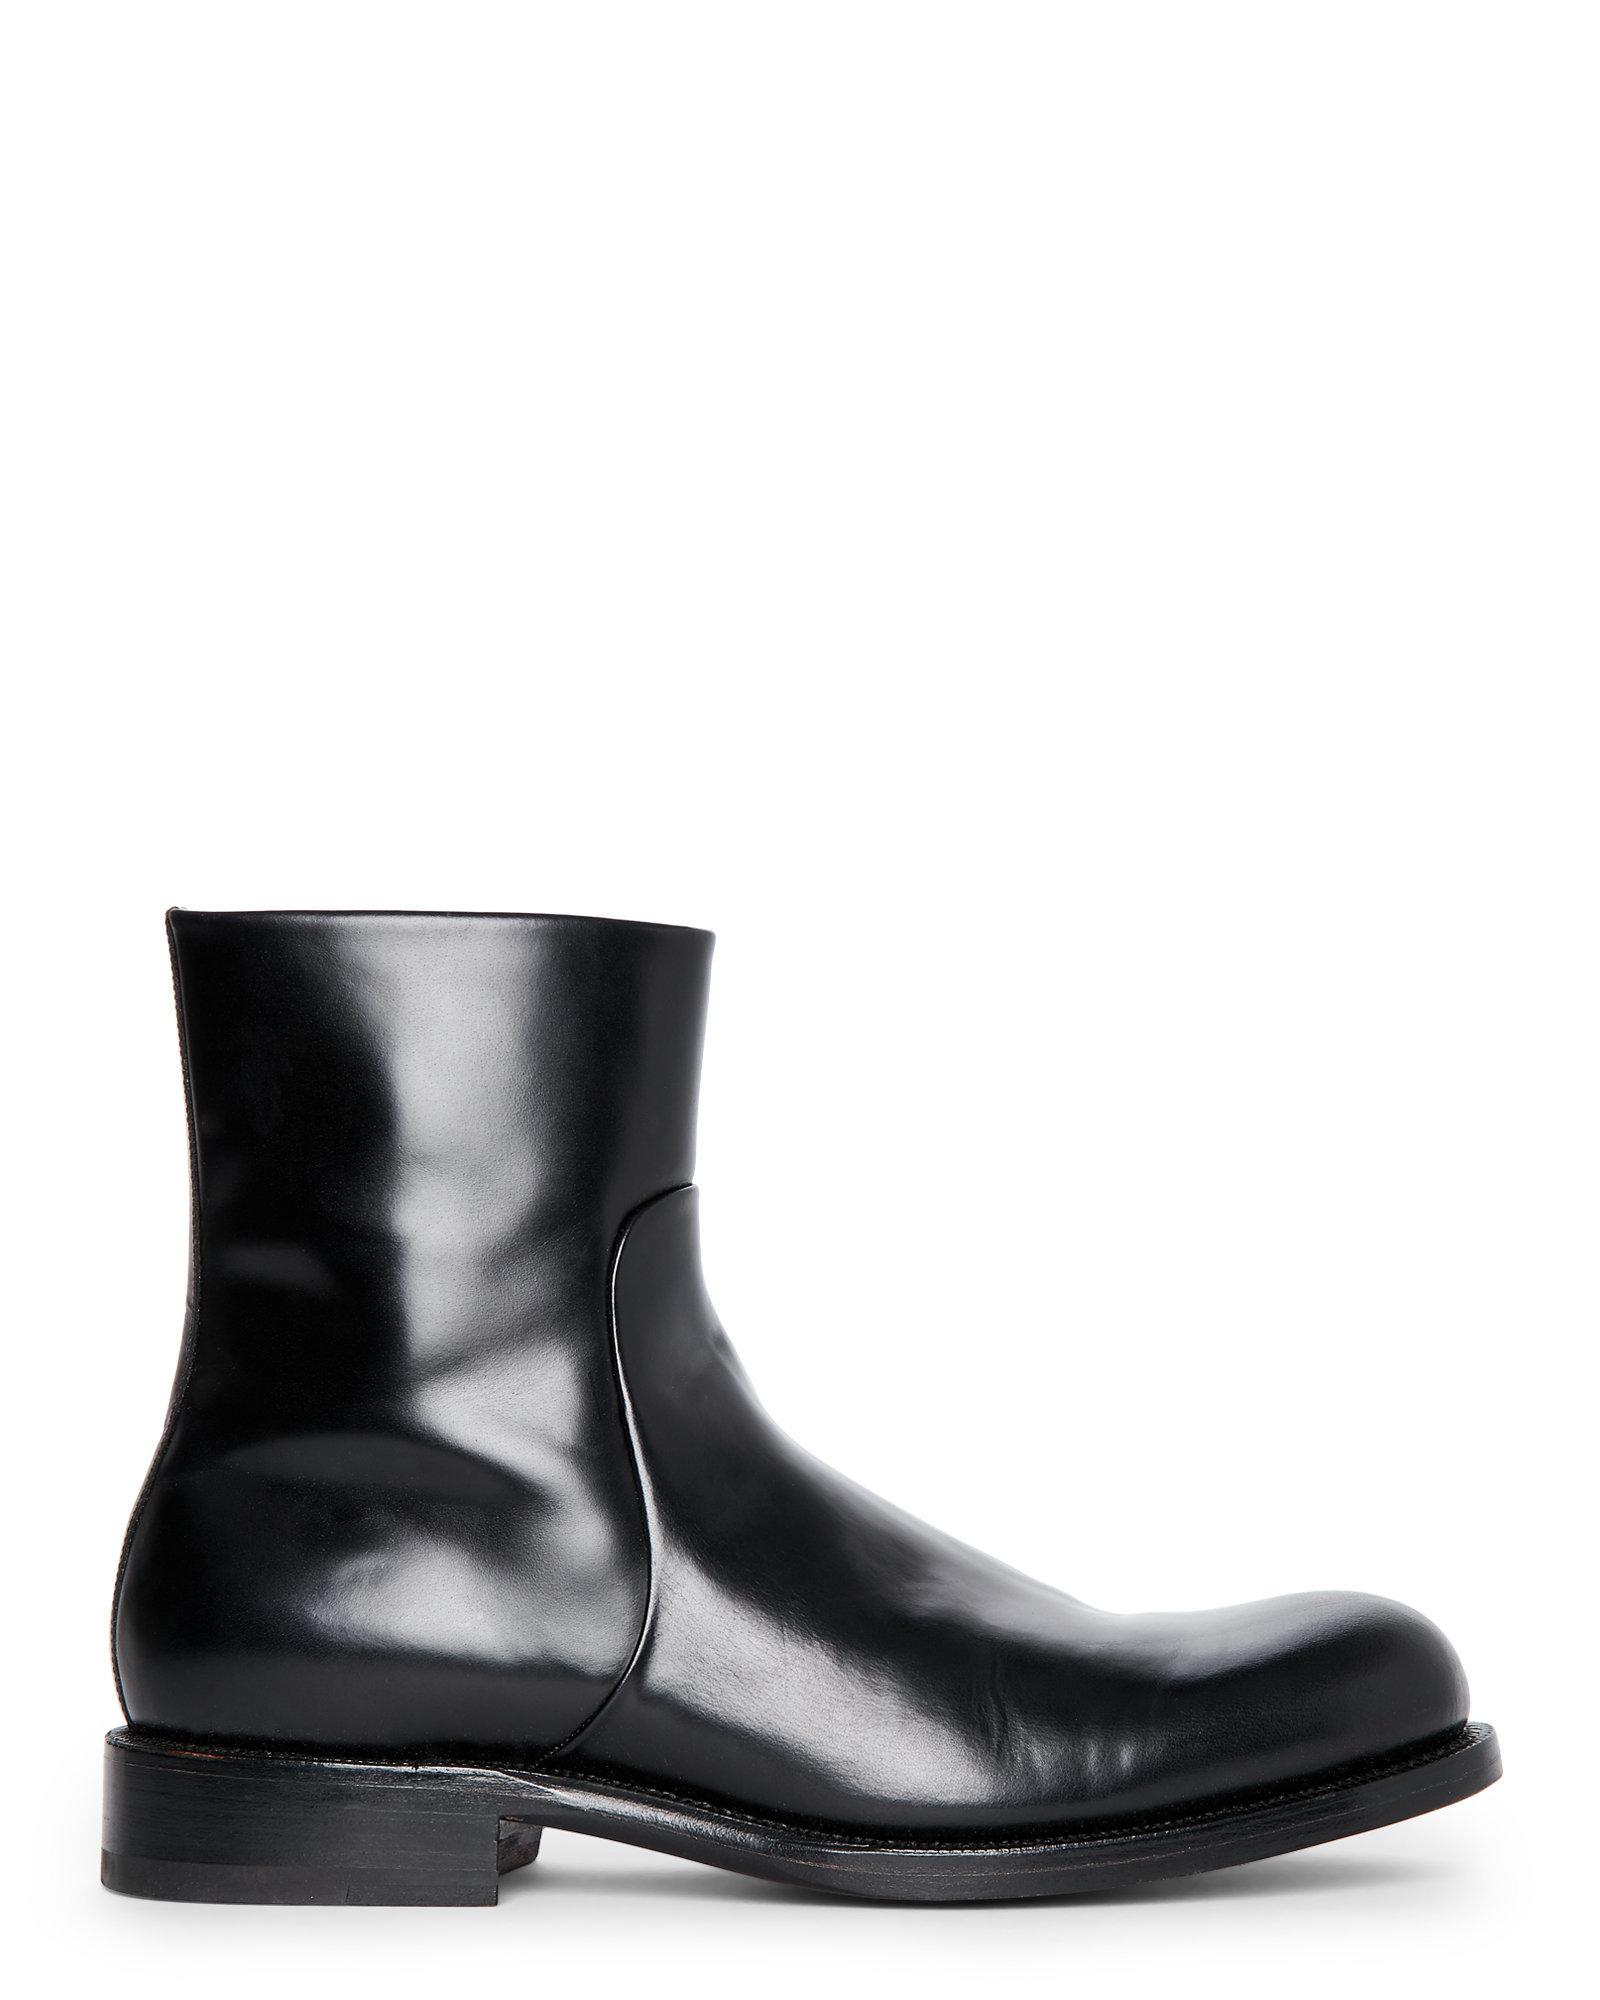 Jil Sander Leather Black Side-Zip Ankle Boots for Men - Lyst